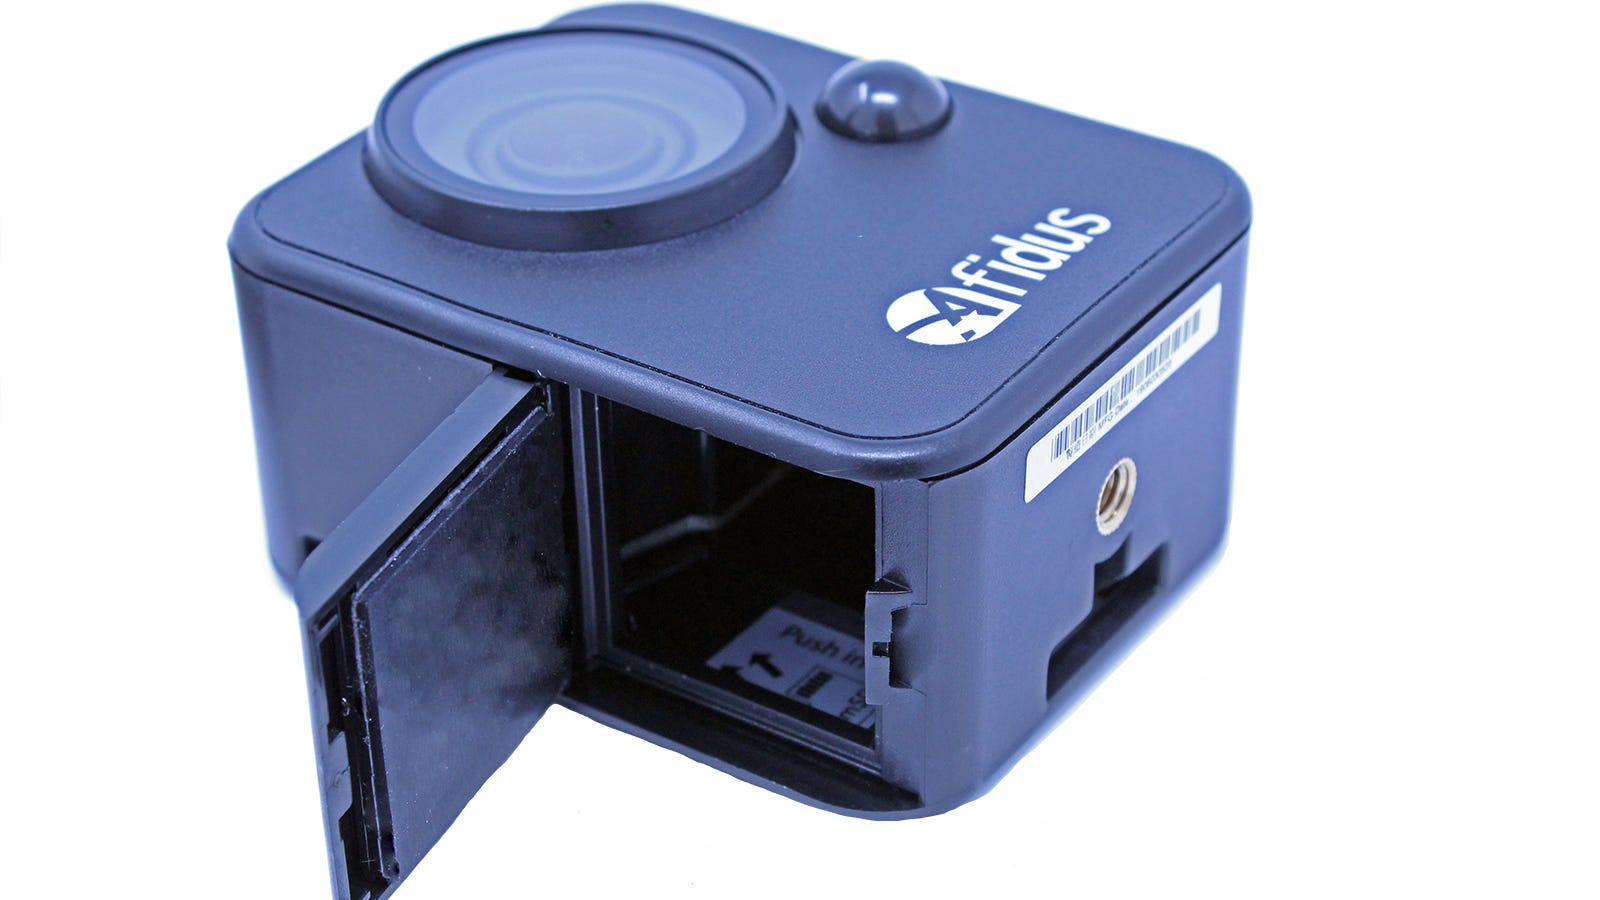 Kamera afidus di samping dengan baterai dilepas, dengan slot kartu microSD.